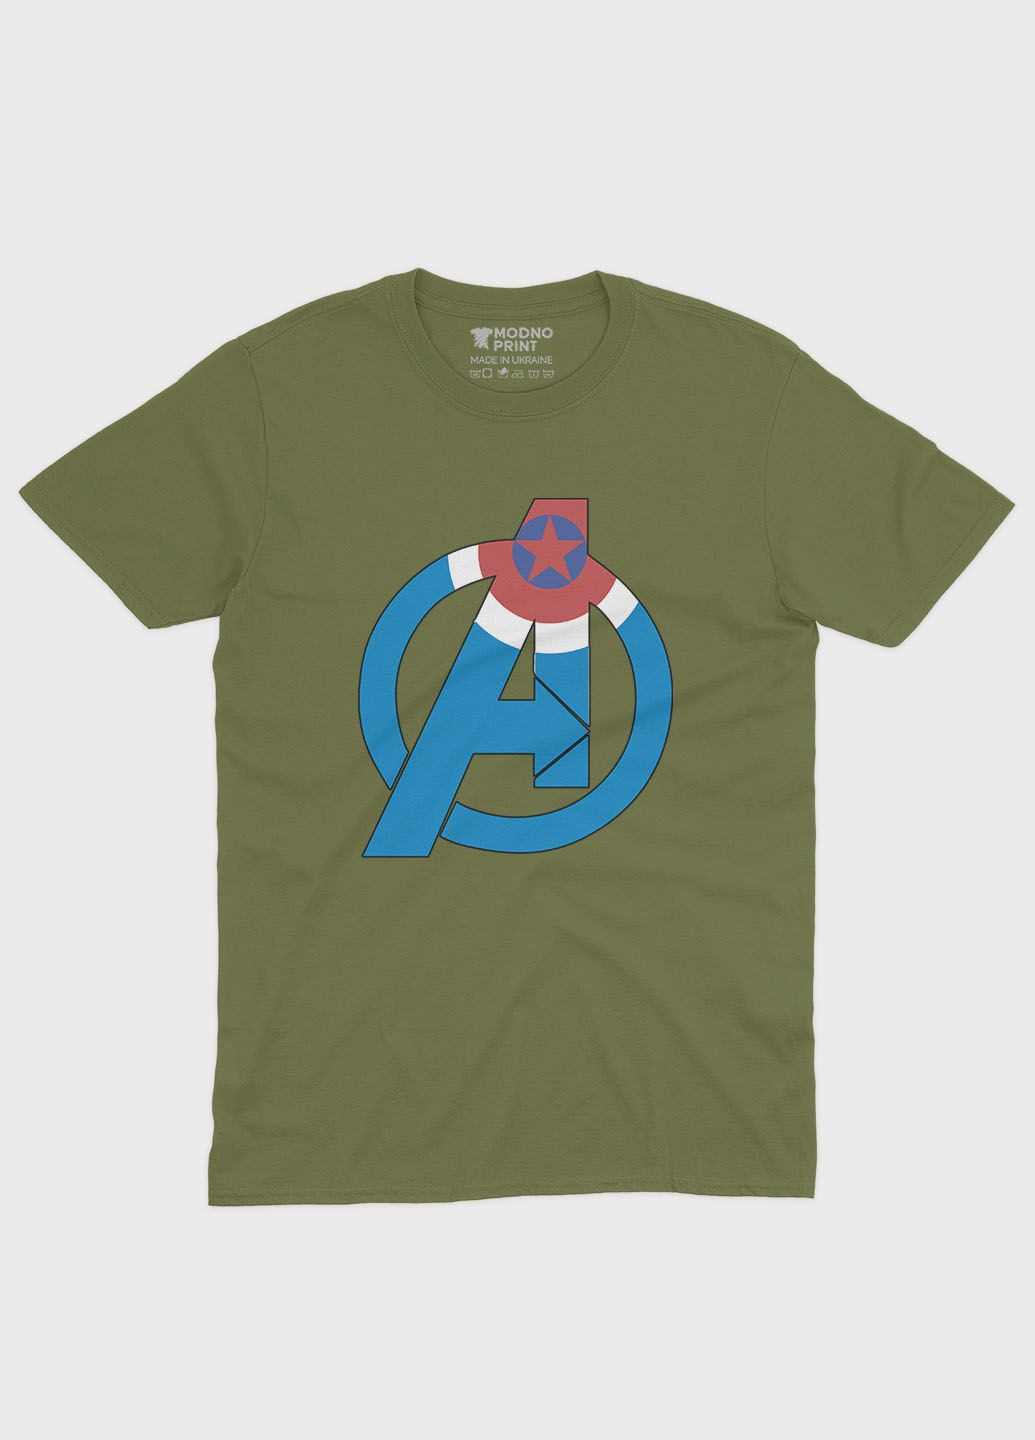 Хаки (оливковая) летняя женская футболка с принтом супергероя - капитан америка (ts001-1-hgr-006-022-012-f) Modno